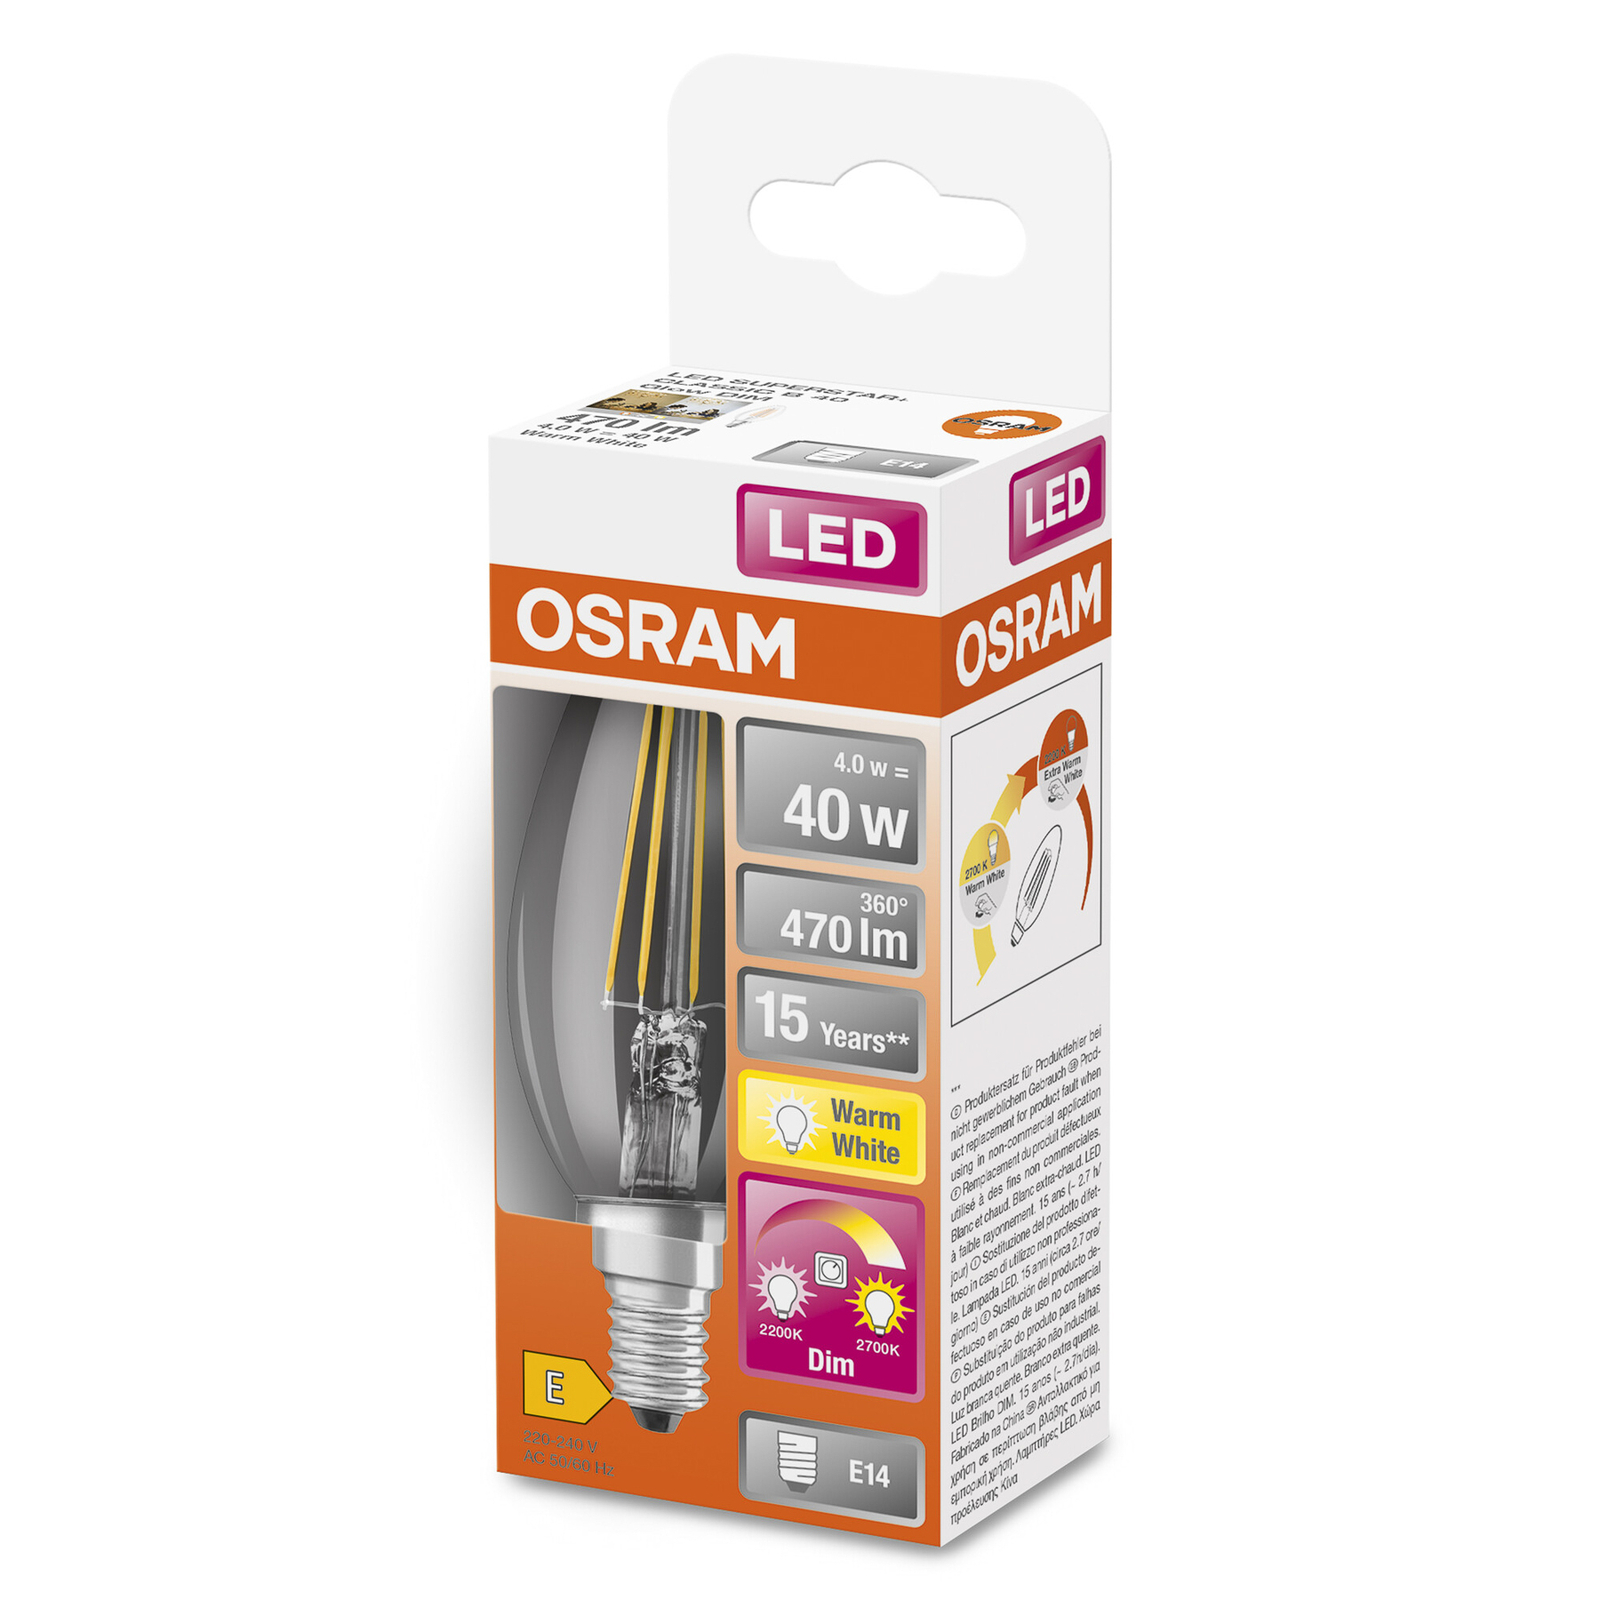 OSRAM LED-lámpa E14 4W GLOWdim világos